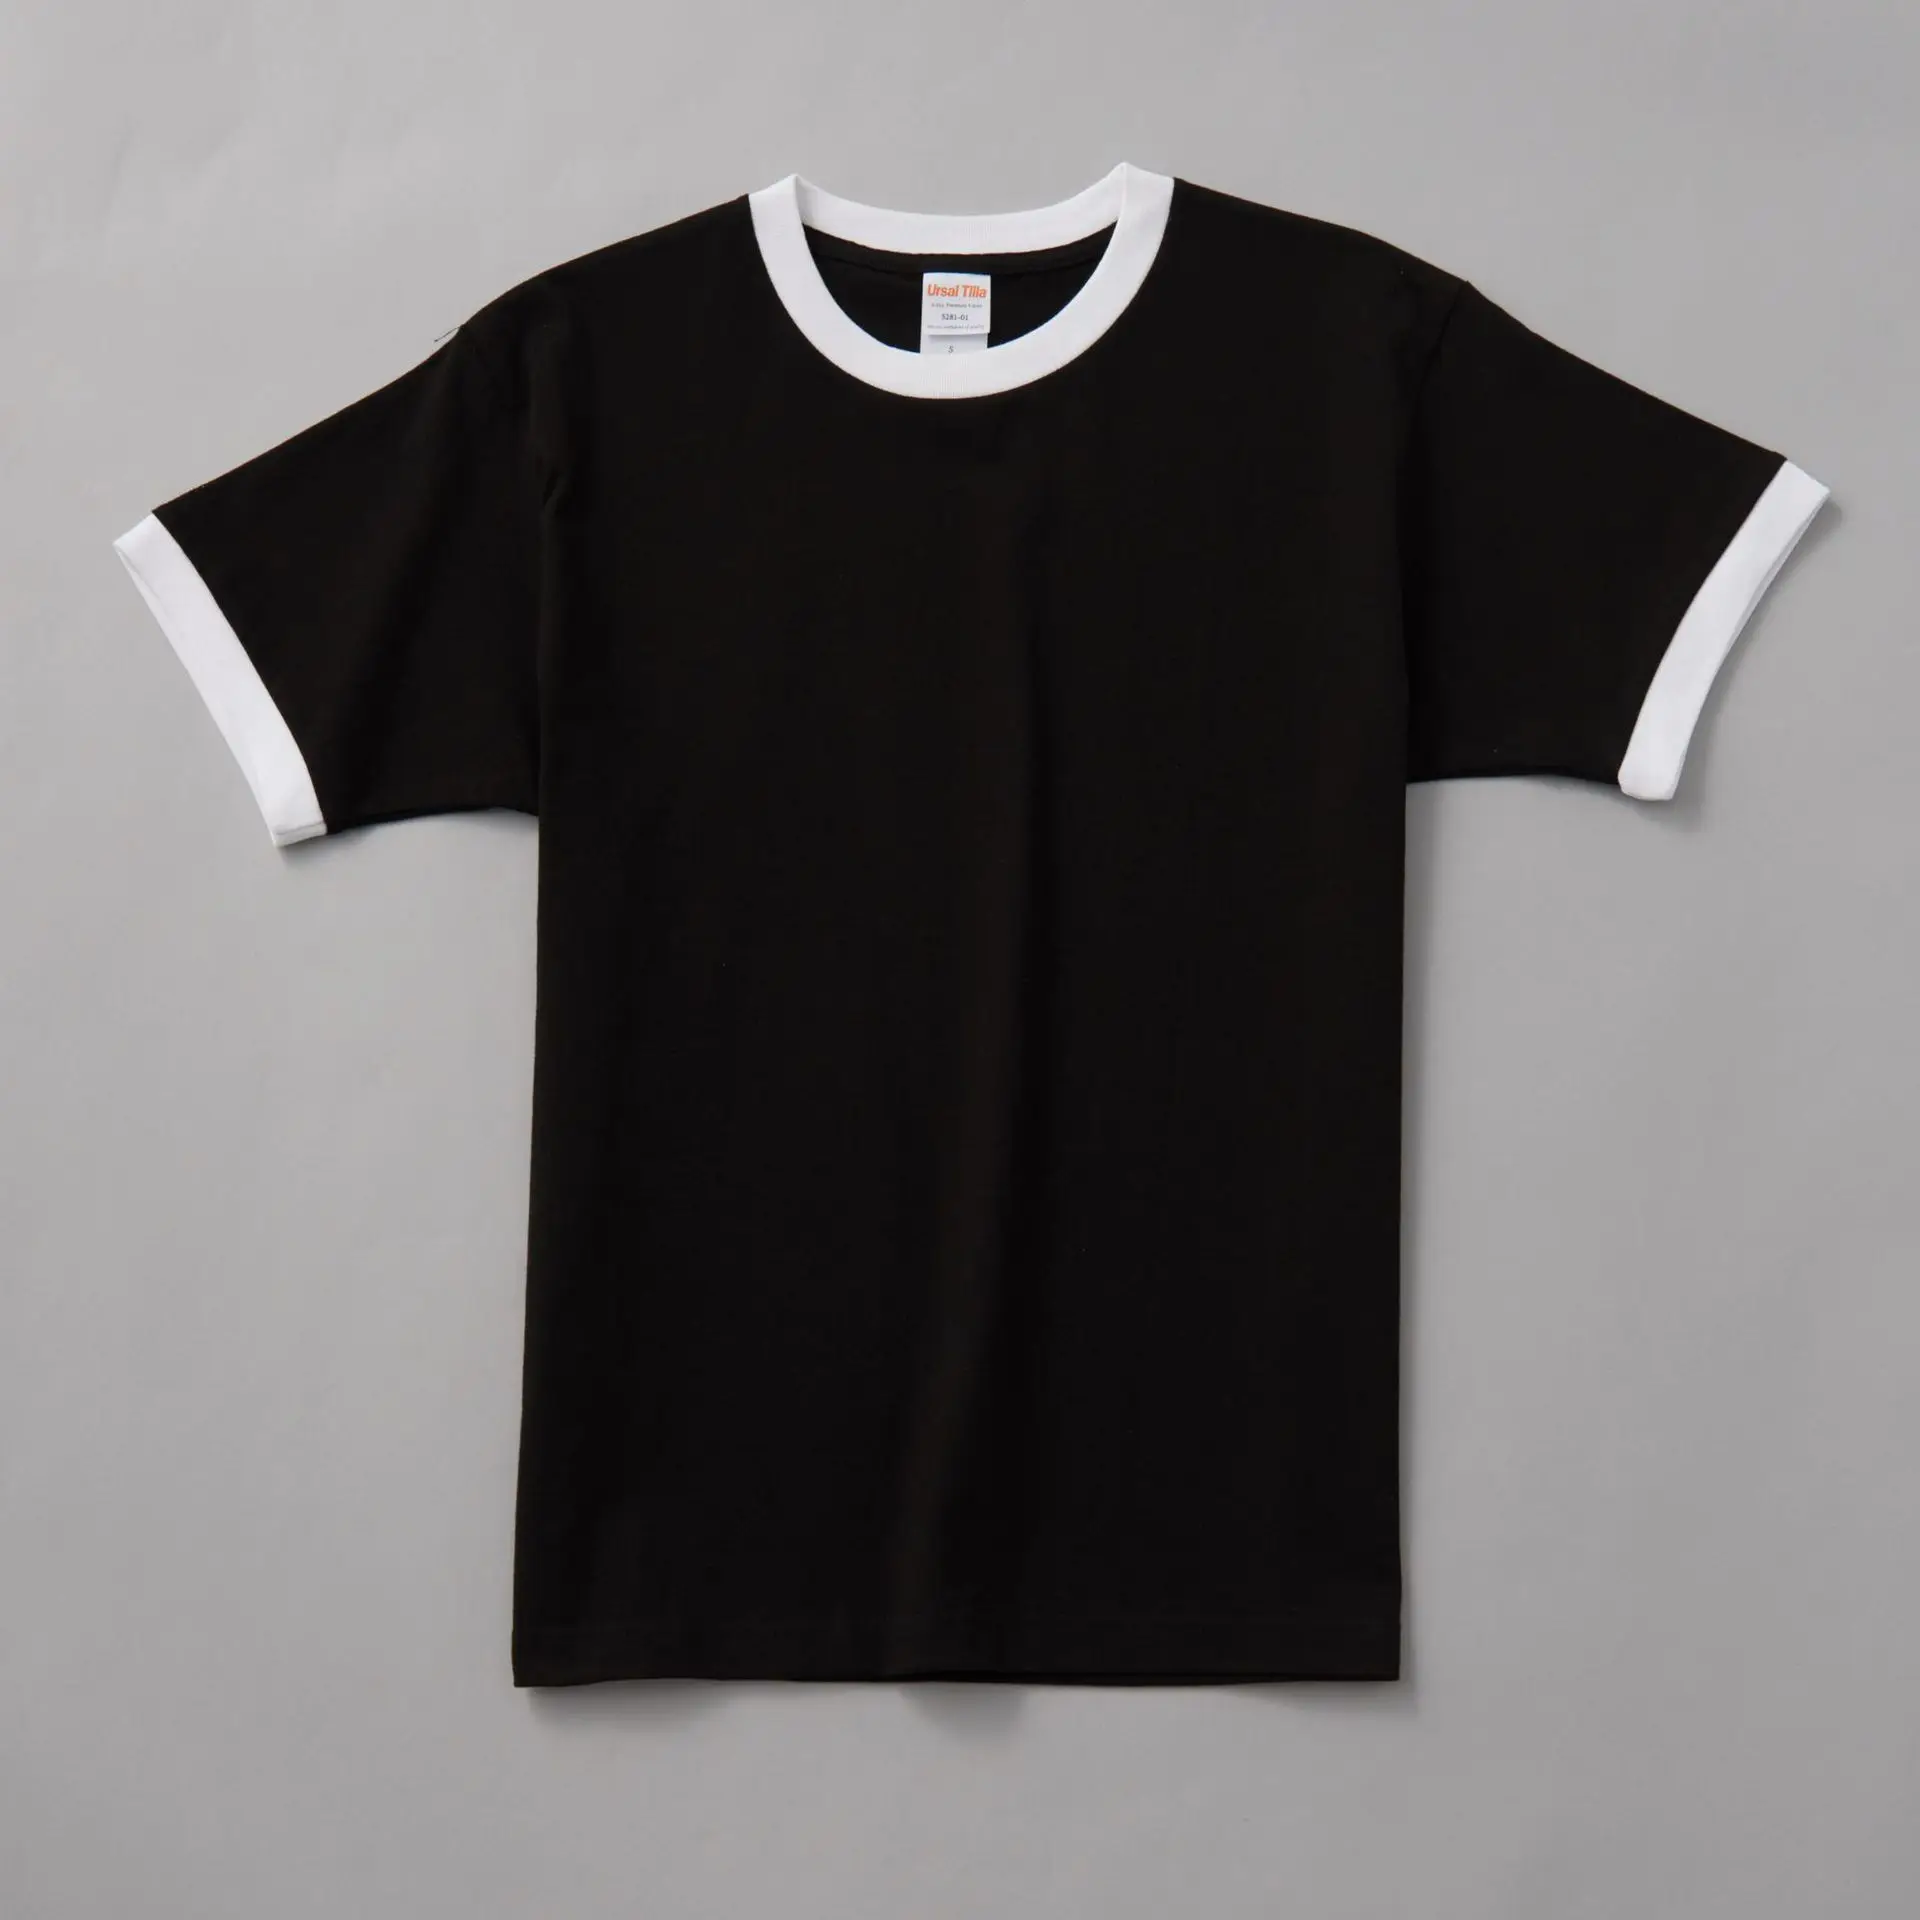 Zengjo Men's Ringer Tee Crew Neck Athletic T Shirts Short Sleeve Sport Shirt for Men